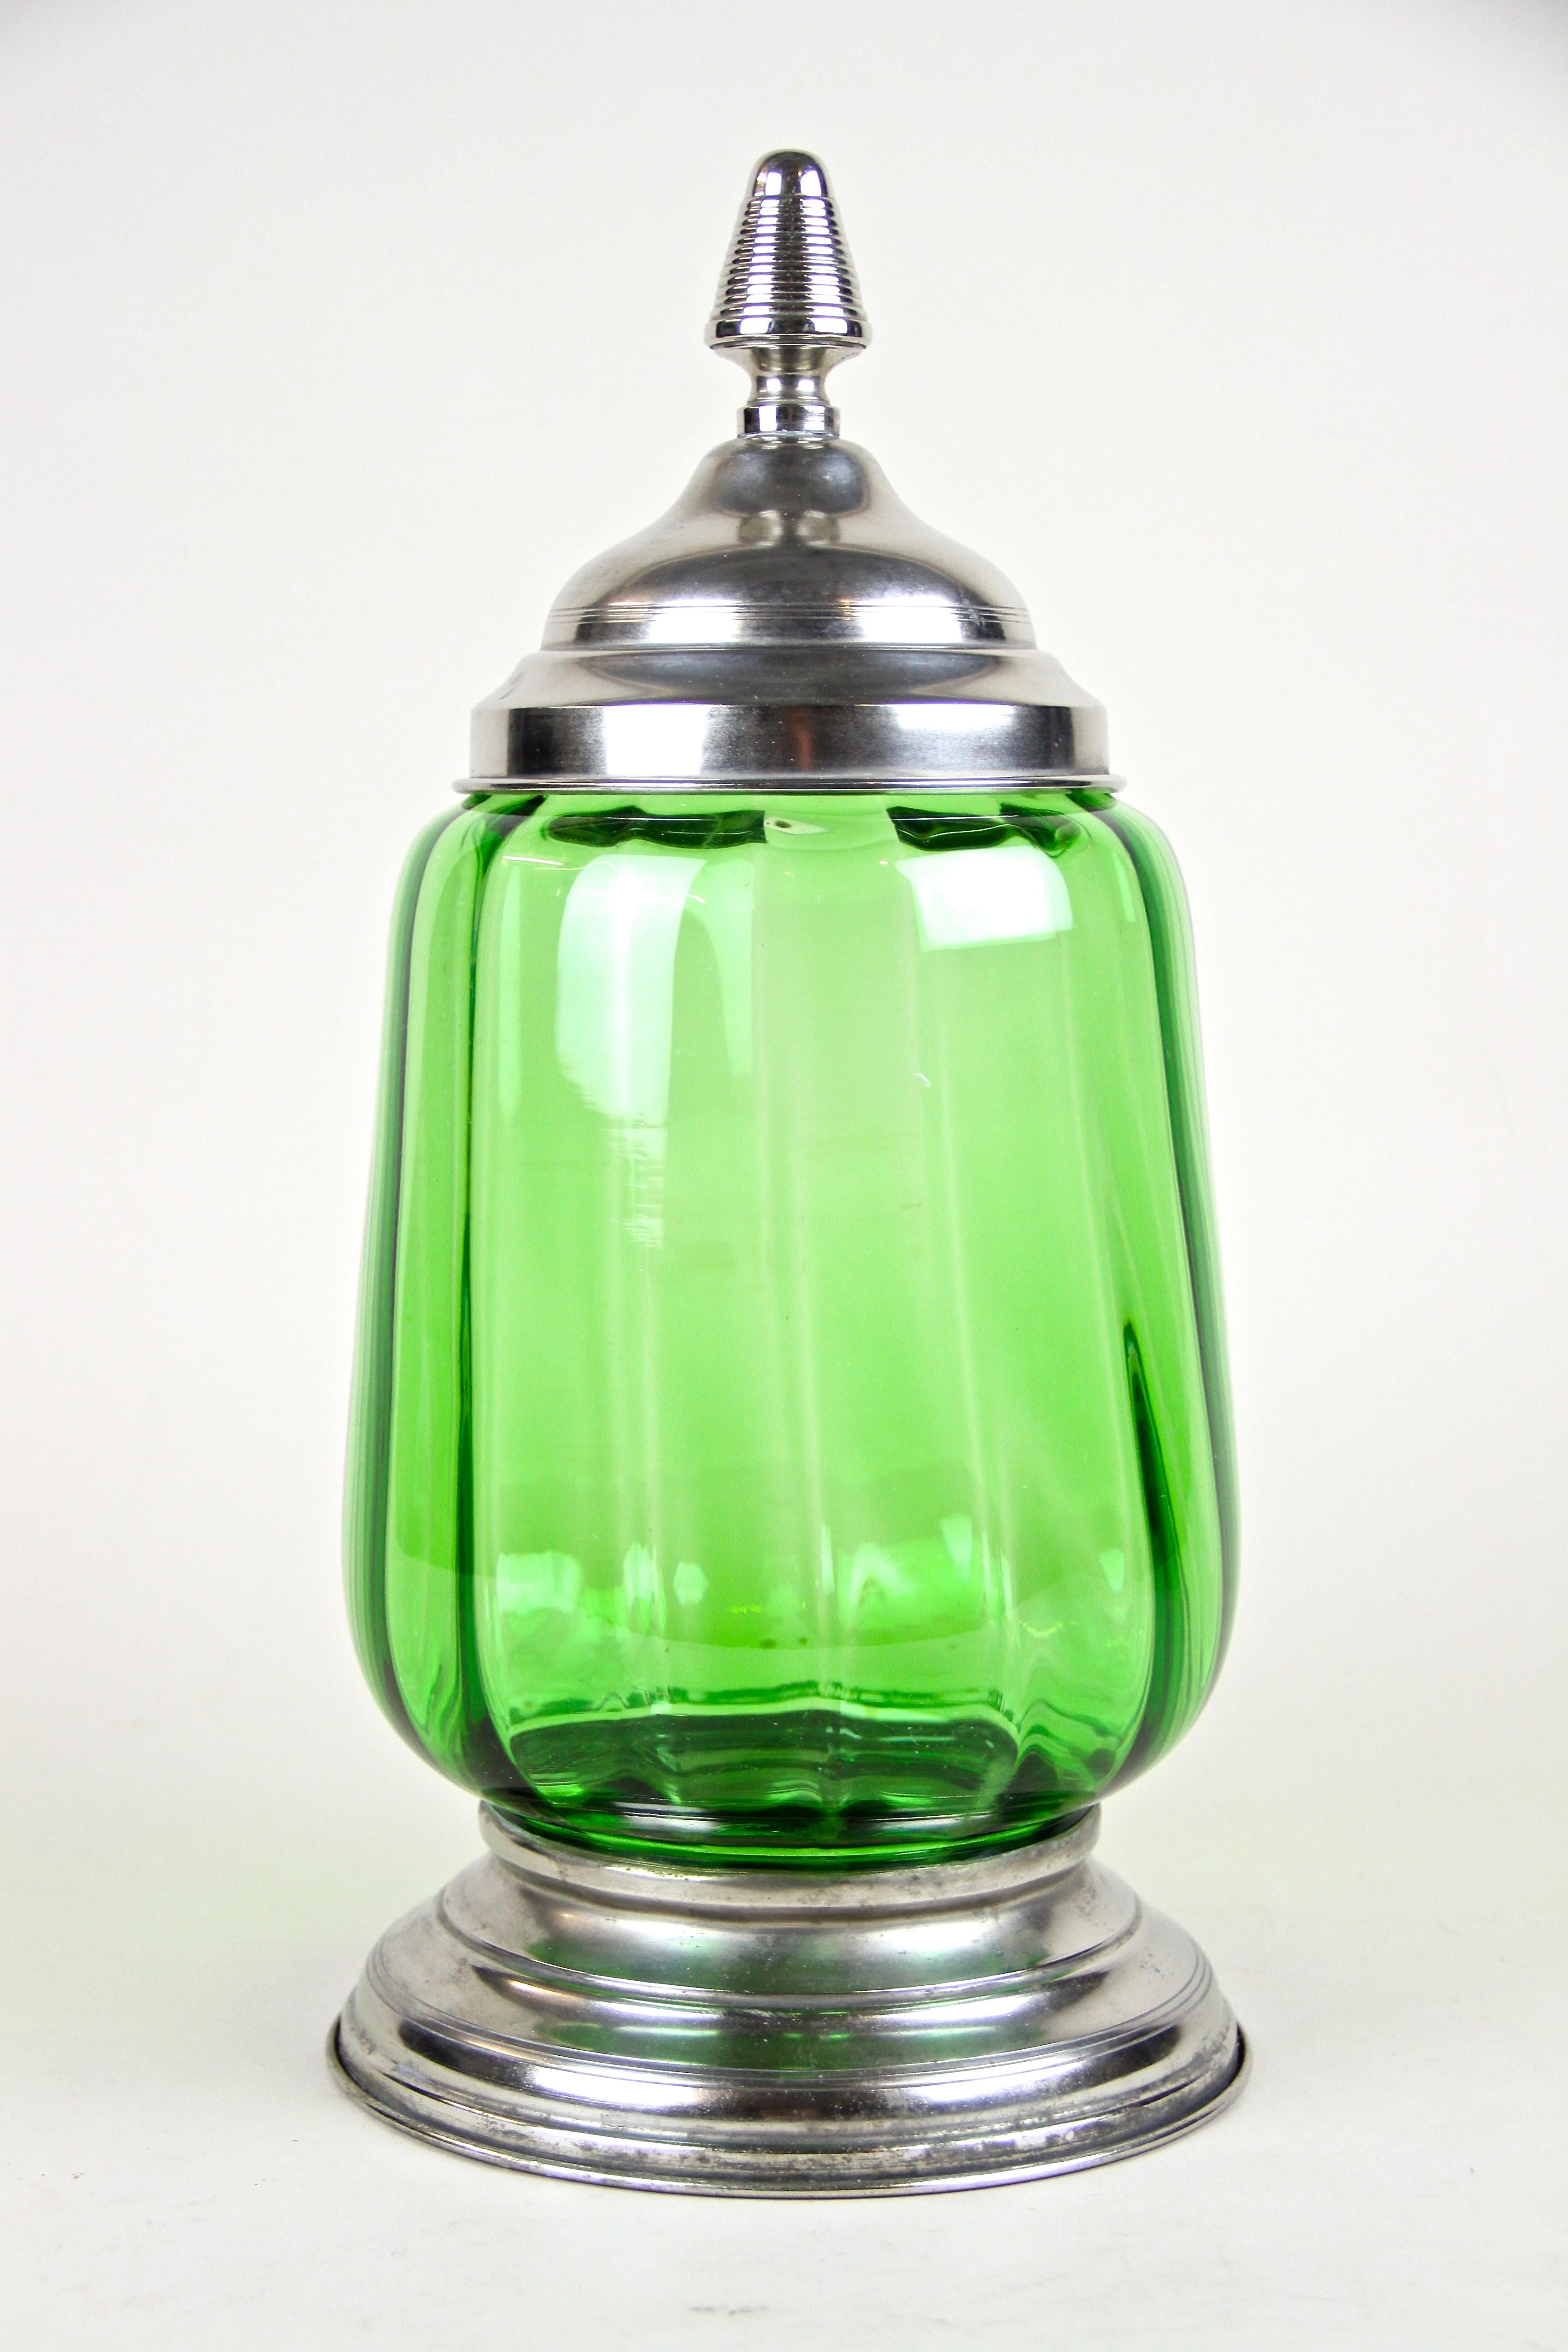 Jolie jarre ou bol à punch en verre Art Déco du début de la période vers 1920 en Autriche. Cette jarre verte du début du 20e siècle impressionne par la forme artistique de son corps en verre légèrement torsadé, encastré dans une belle base. Le